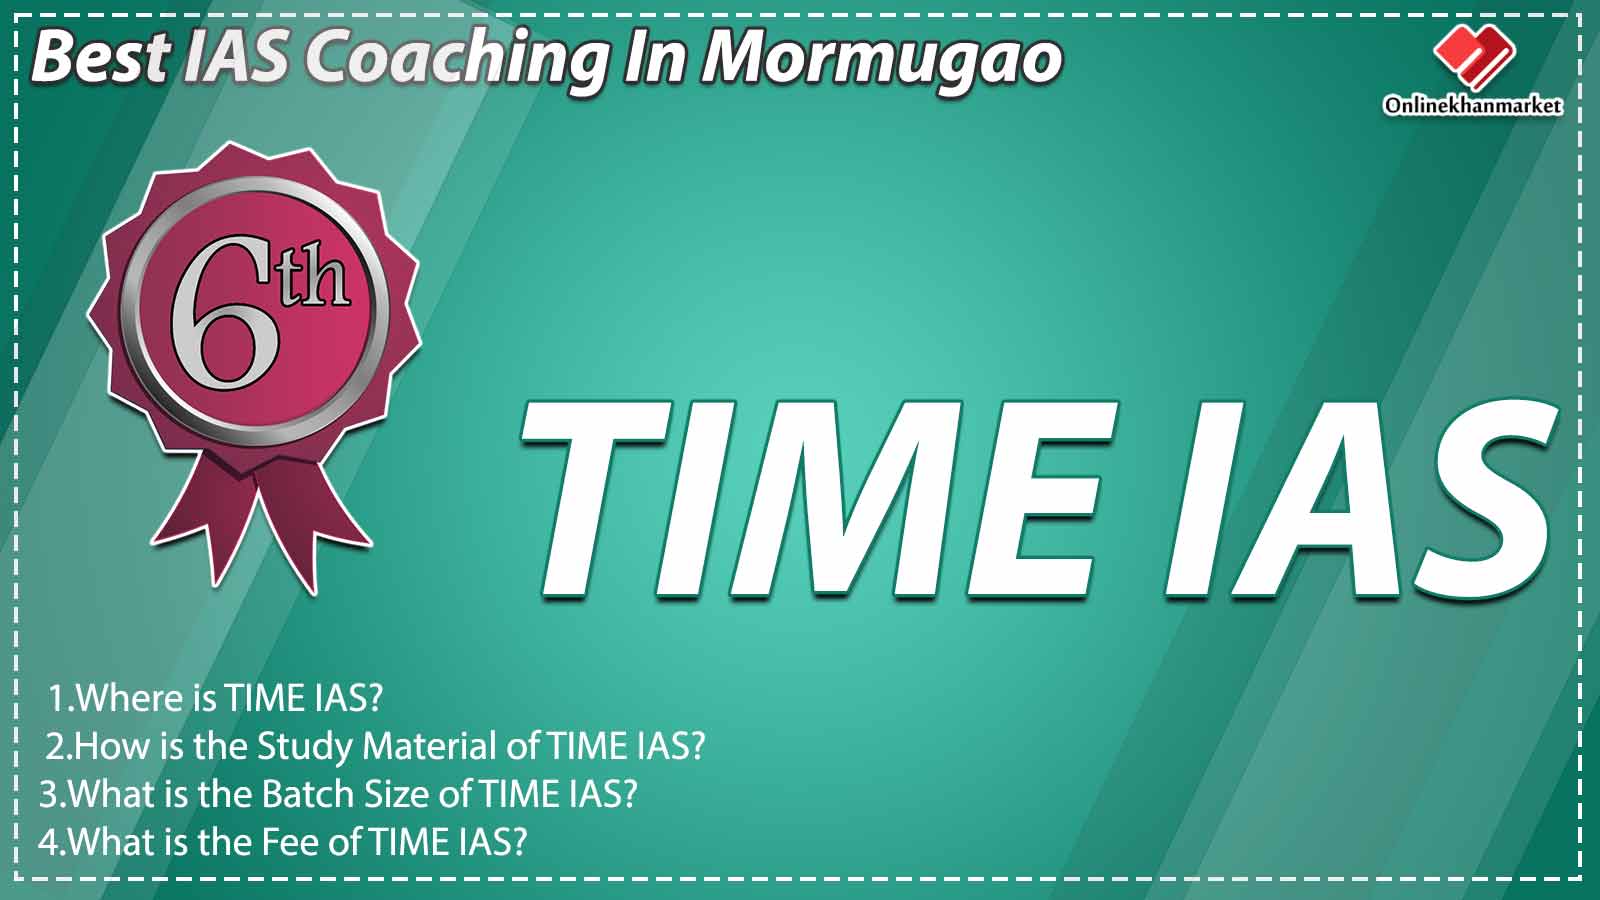 Best IAS Coaching in Mormugao